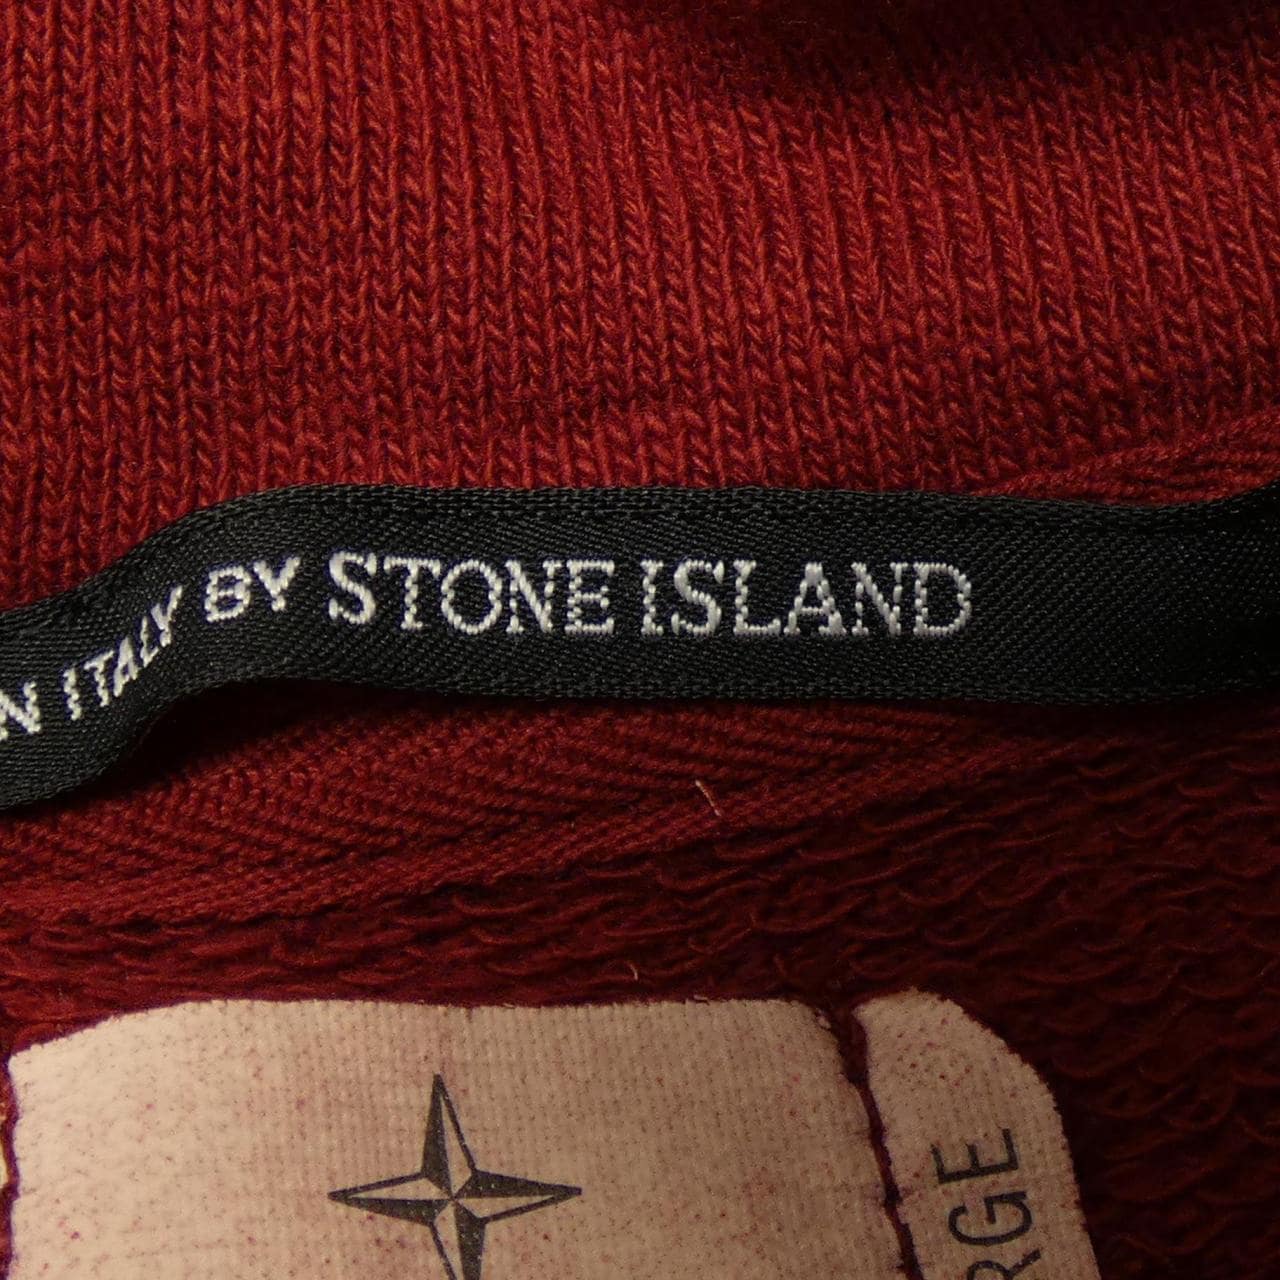 Ai Stone land STONE ISLAND sweat shirt